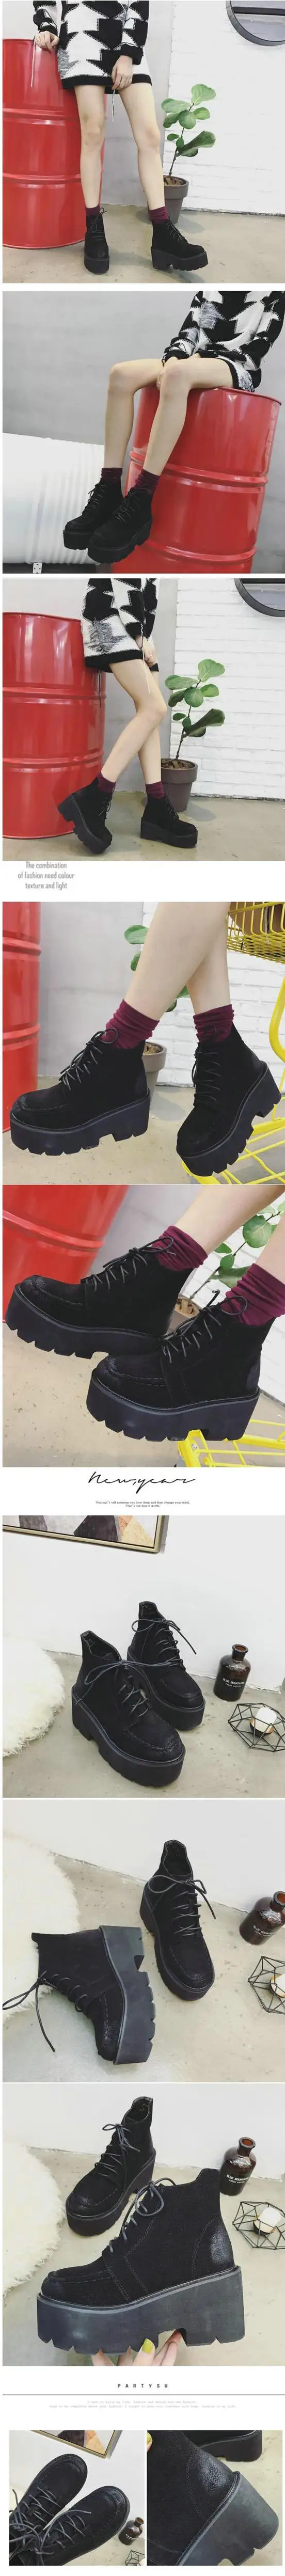 OLOMM модные ботинки черного цвета г. Новая Осенняя женская обувь на толстой платформе с кружевом вечерние ботинки LL-64 на высоком каблуке